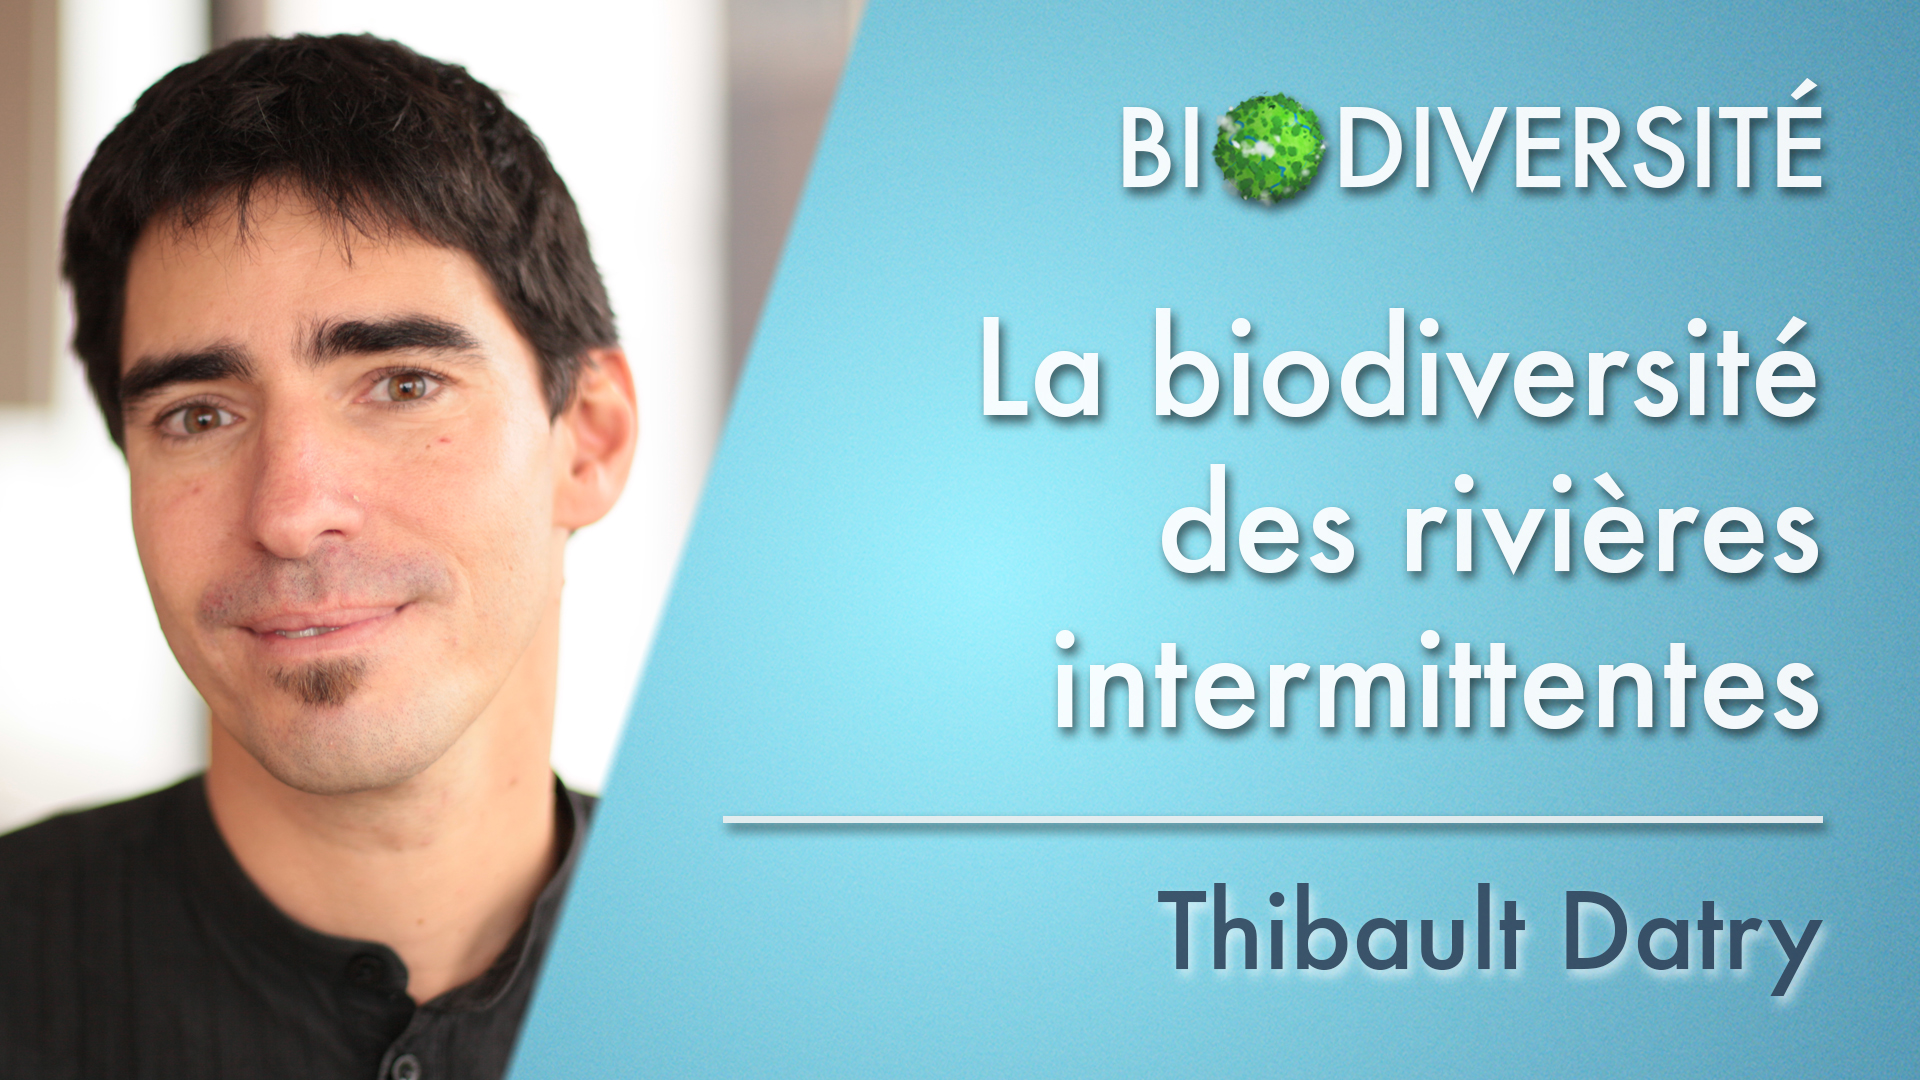 4. La biodiversité des rivières intermittentes